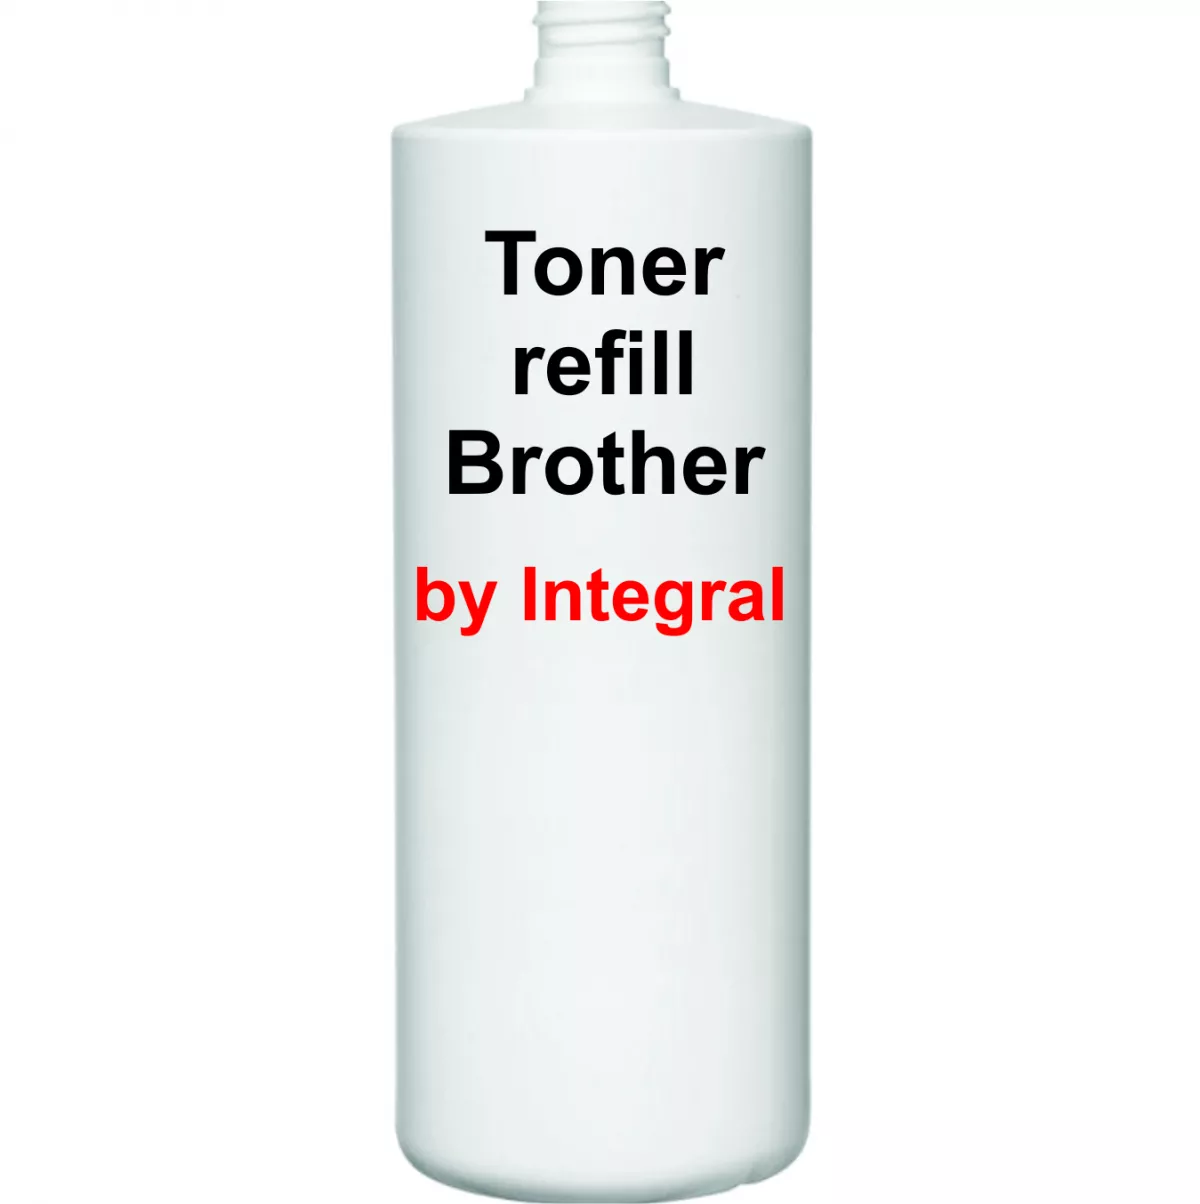 Toner refill cartus Brother TN2411 TN2421 500g